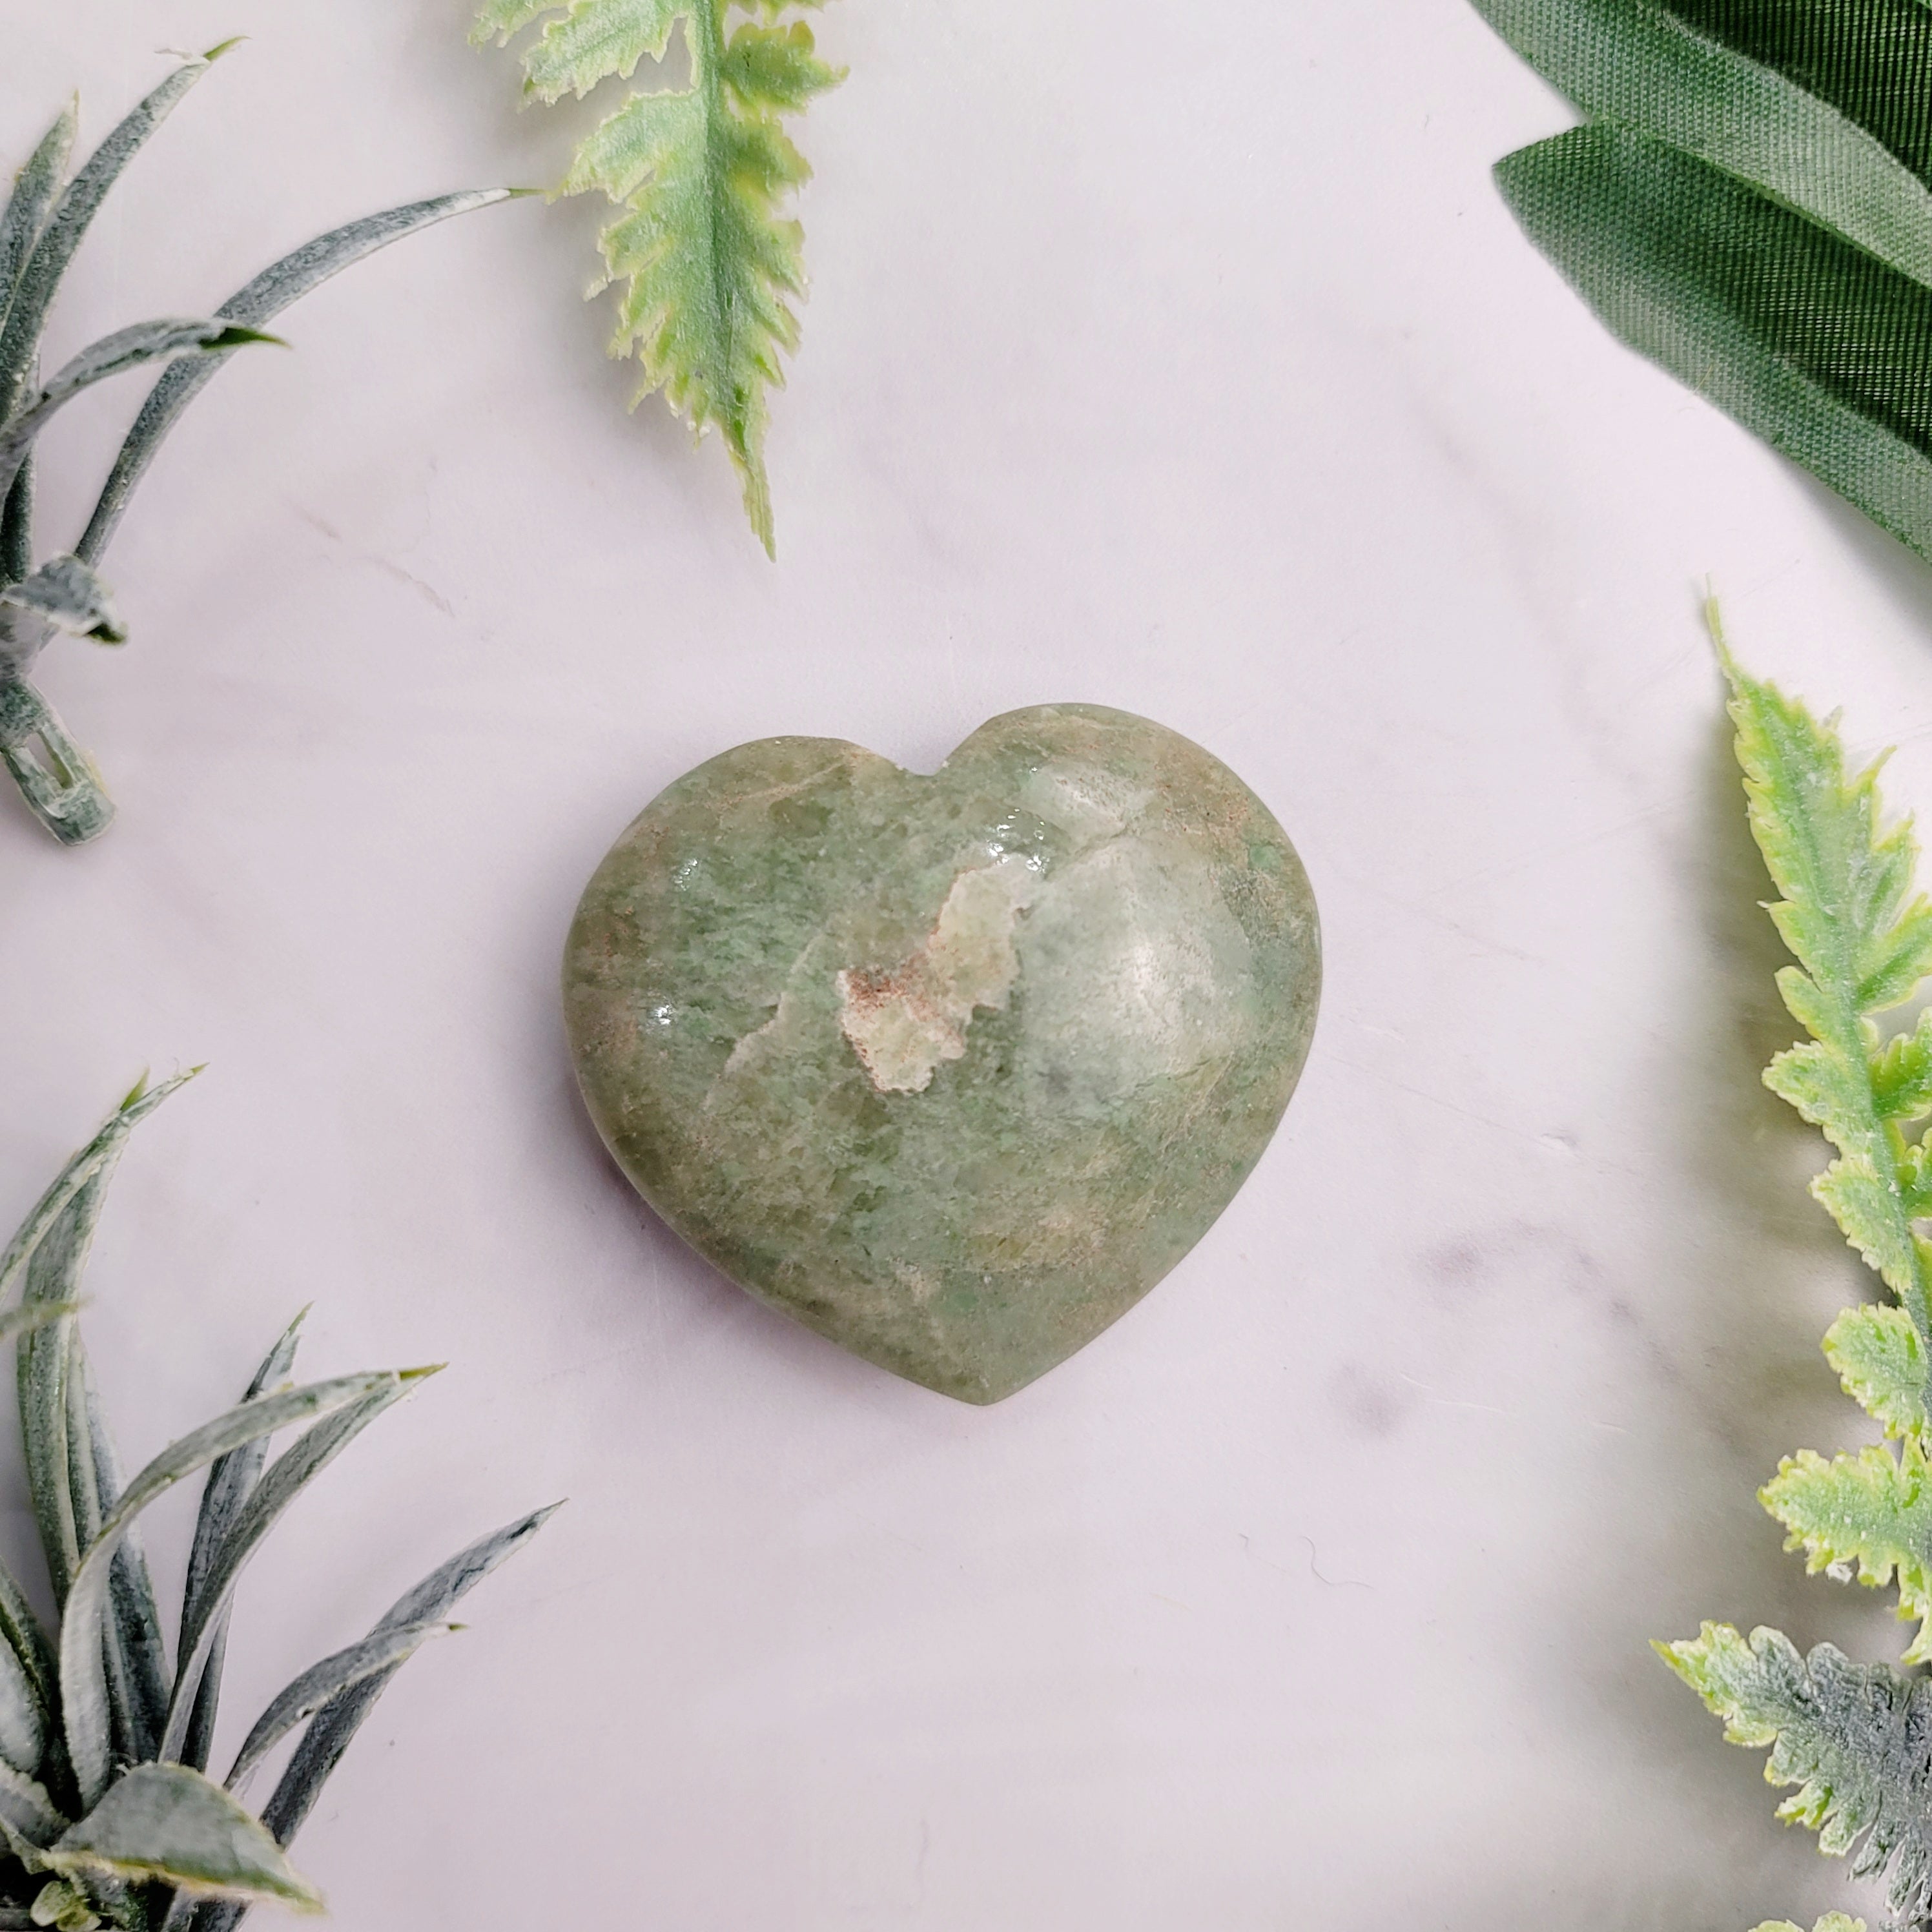 Grossular Green Garnet Heart for Detoxifying the Body